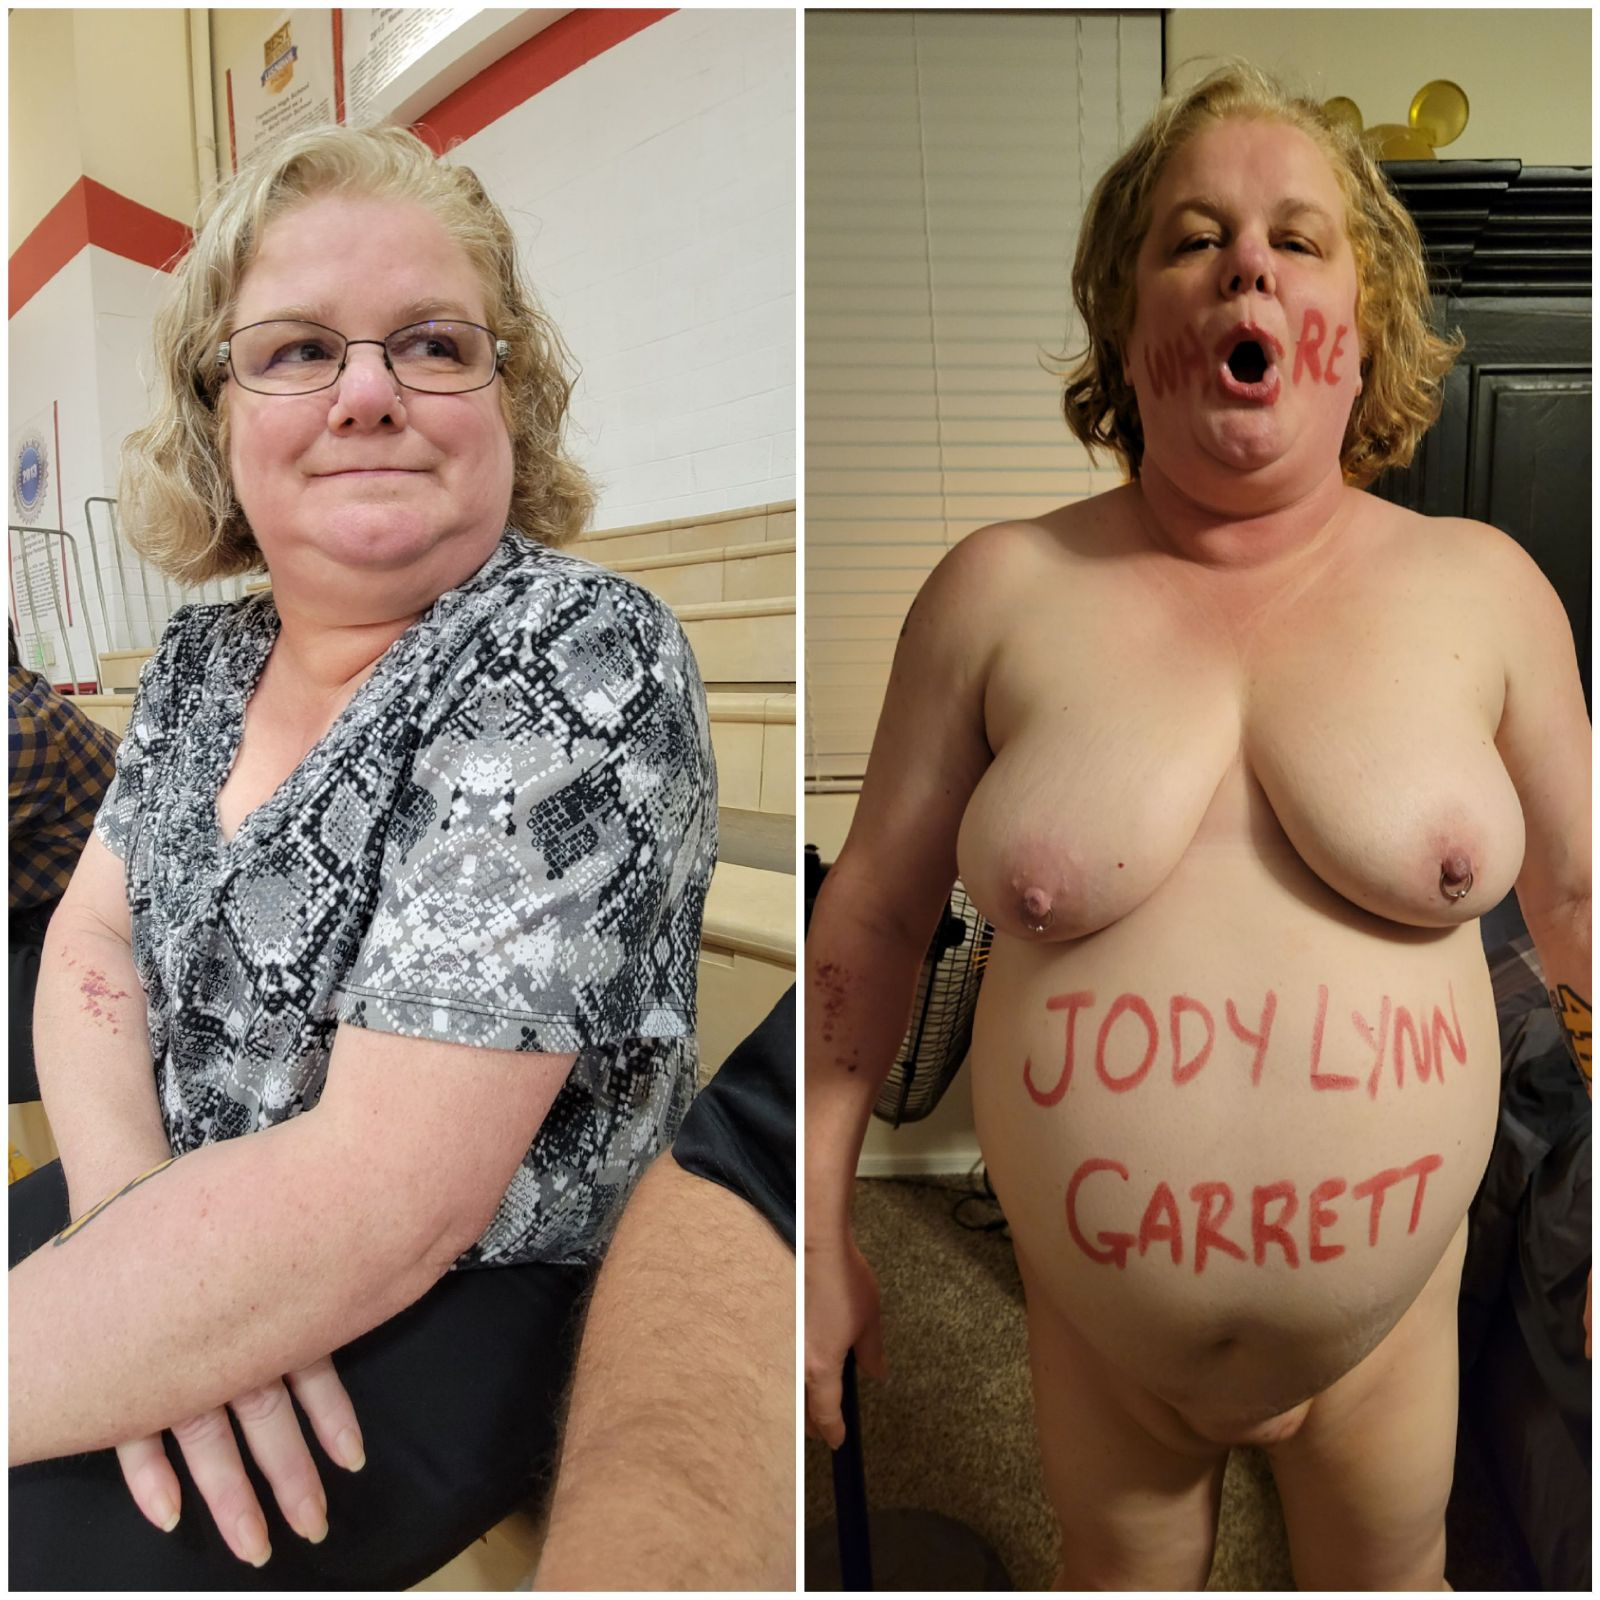 Jody Lynn Garrett exposed slut